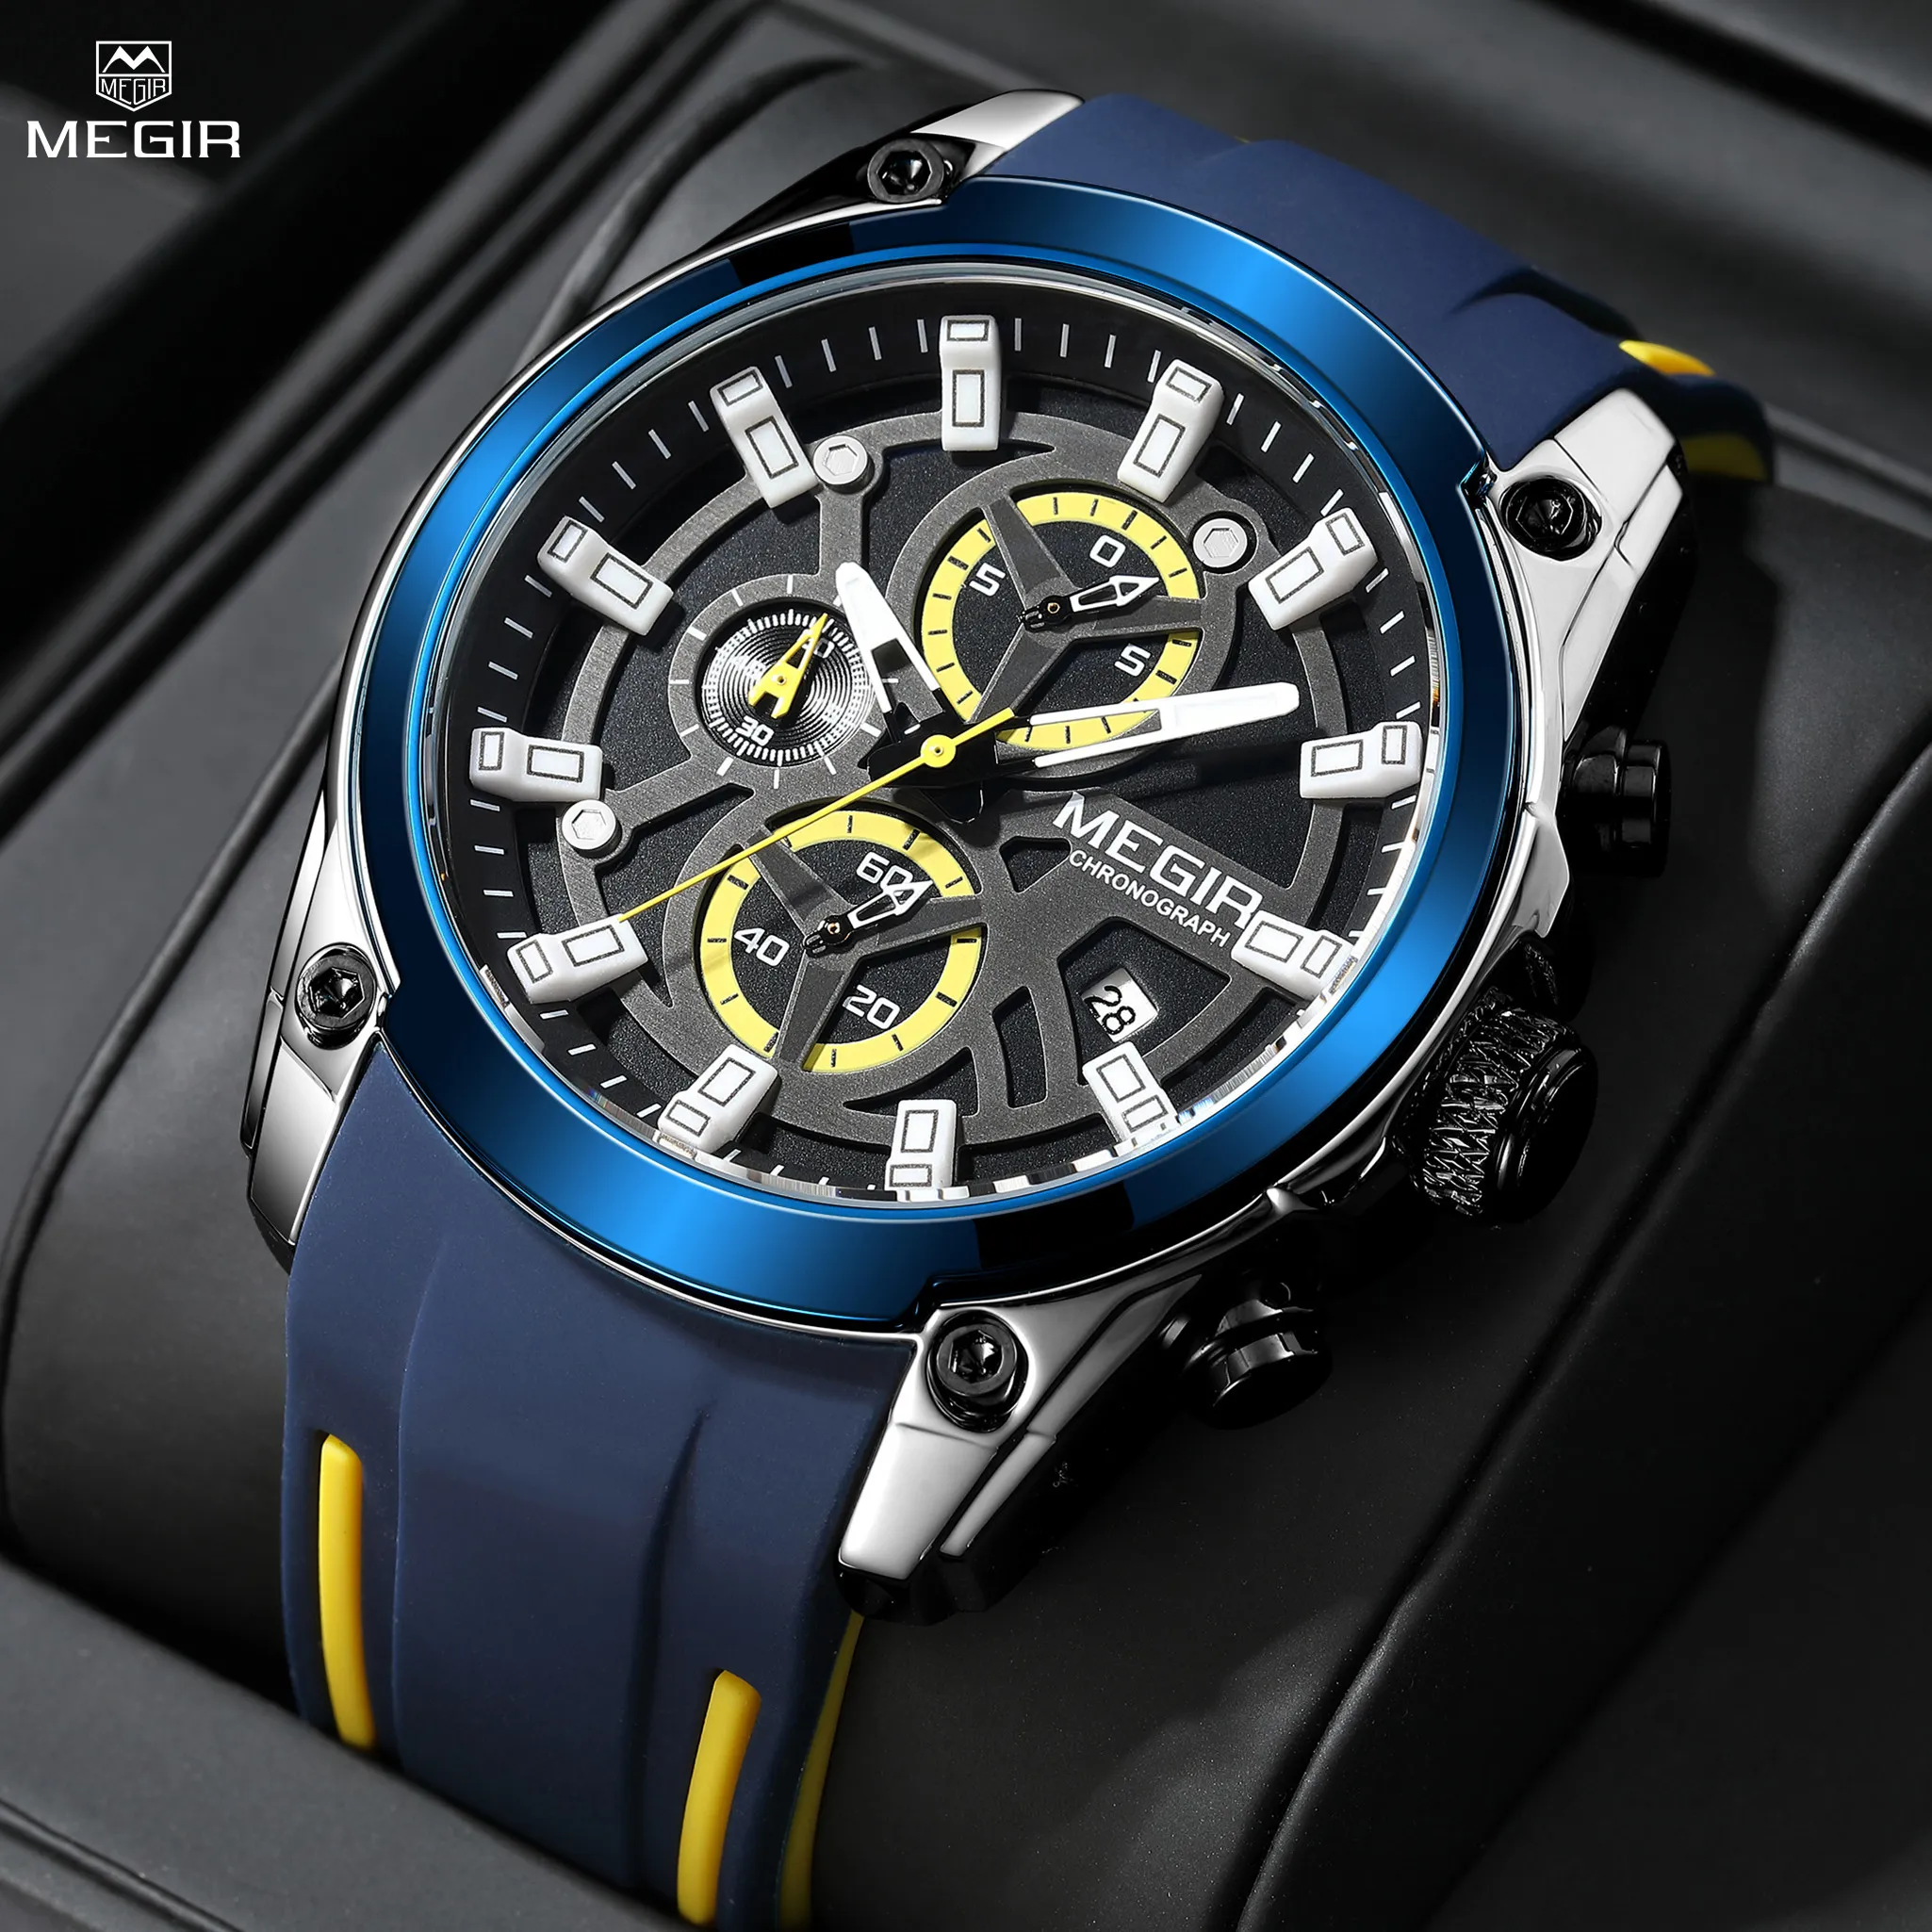 MEGIR-azul original esporte relógios para homens, top luxo cronógrafo relógio de pulso, relógio de quartzo militar, grande mostrador luminoso